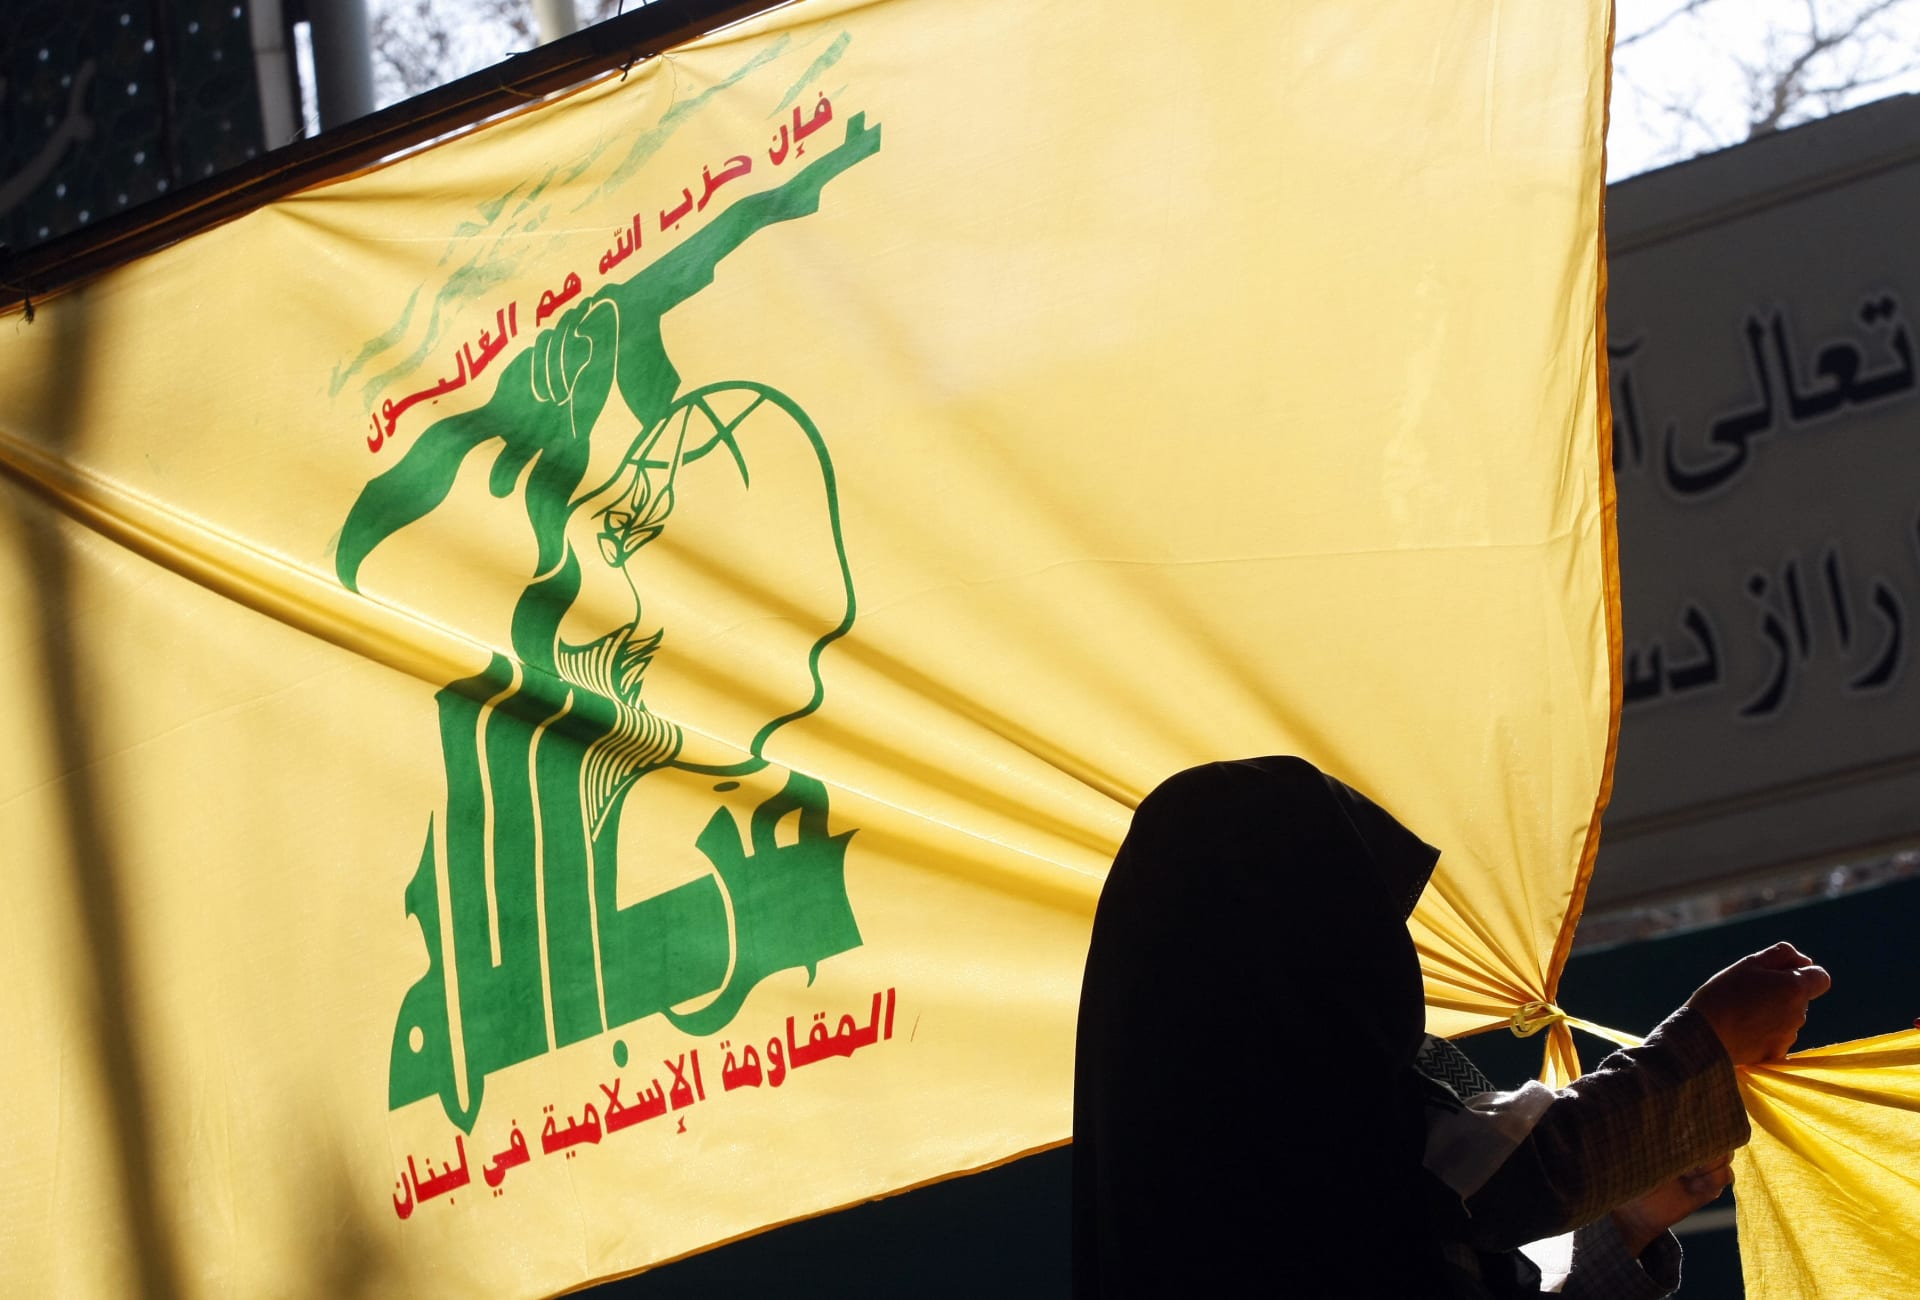 نائب لبناني في كتلة حزب الله يطالب بـ"تحرك فوري" ضد السفيرة الأمريكية.. ووزير الخارجية يستدعيها